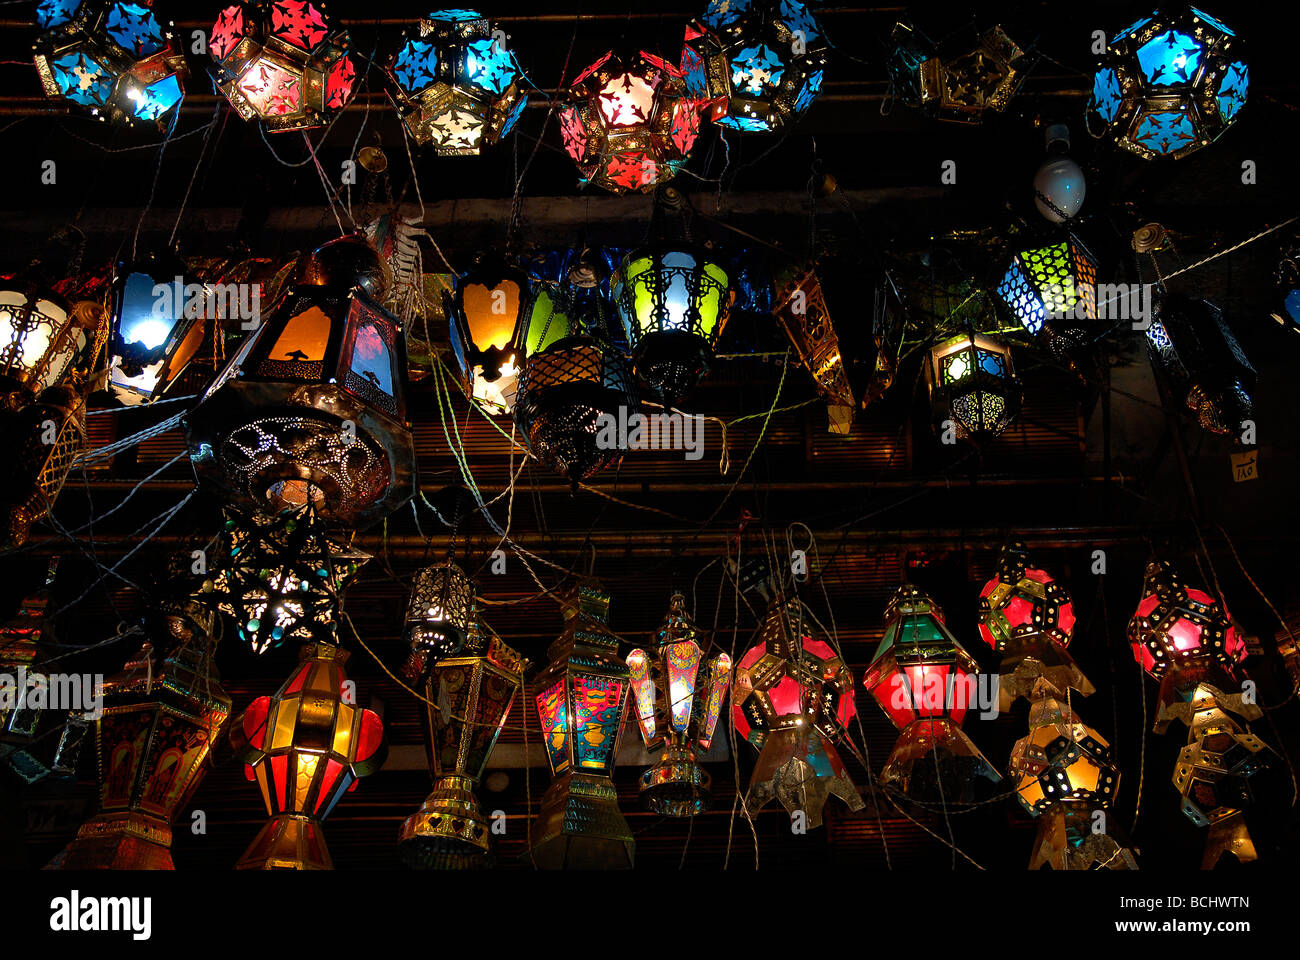 Dans le Ramadan les gens achètent ce qu'on appelle fanooz lanternes pour décorer leur maison avec elle. Une vieille tradition, fait par tout le monde. Banque D'Images